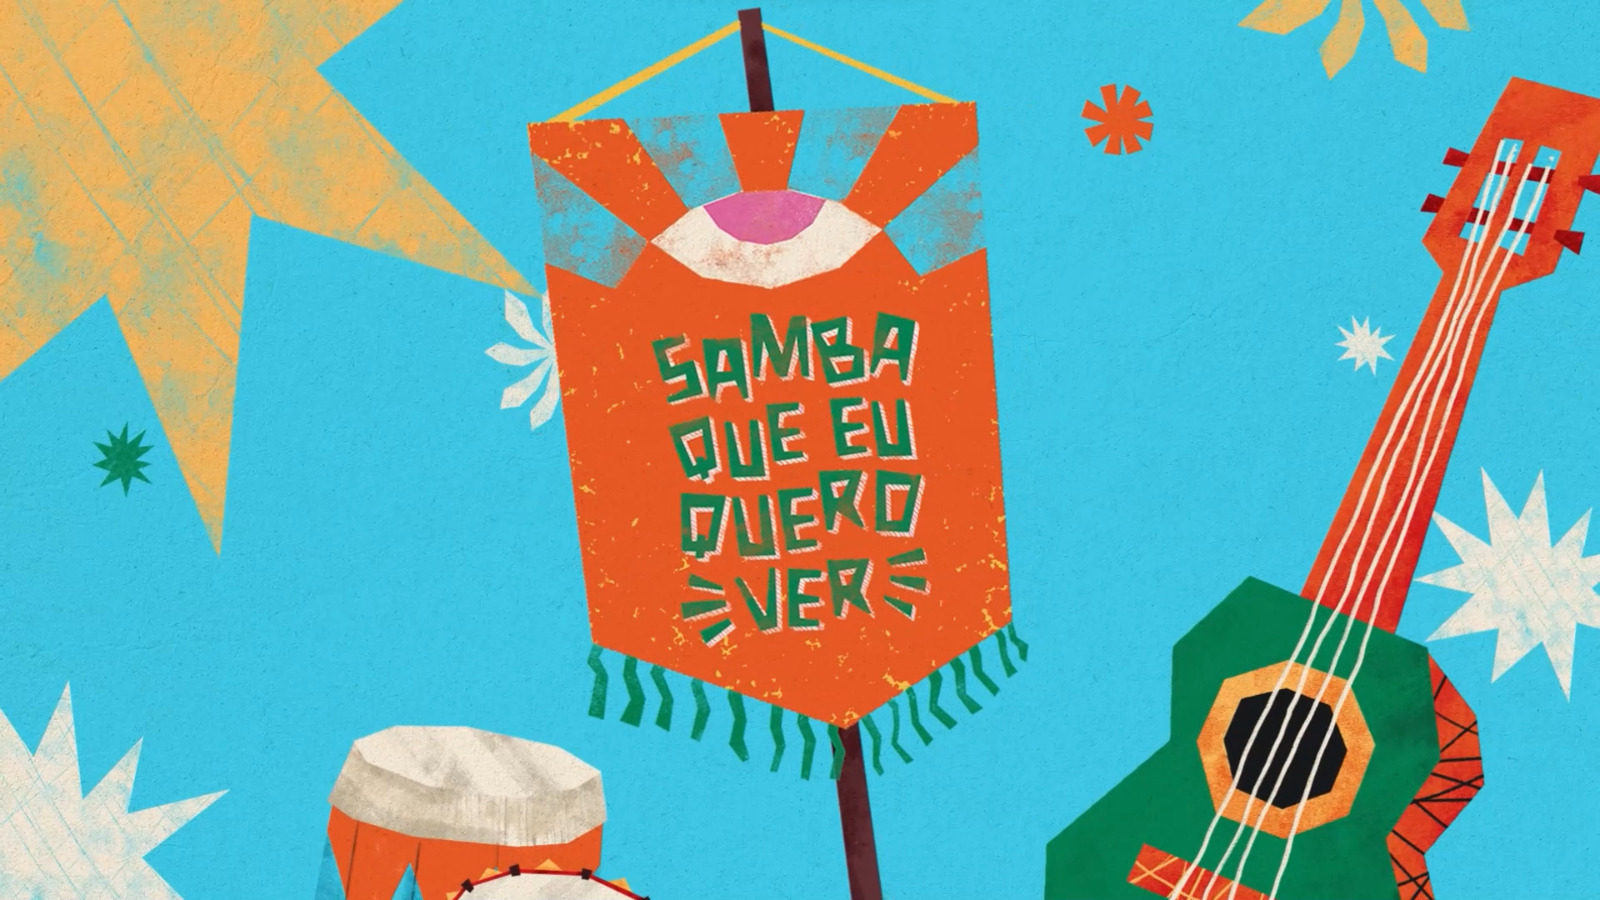 Arte do evento Samba Que Quero Ver, com desenhos de um estandarte, um violão, dois tambores e estrelas